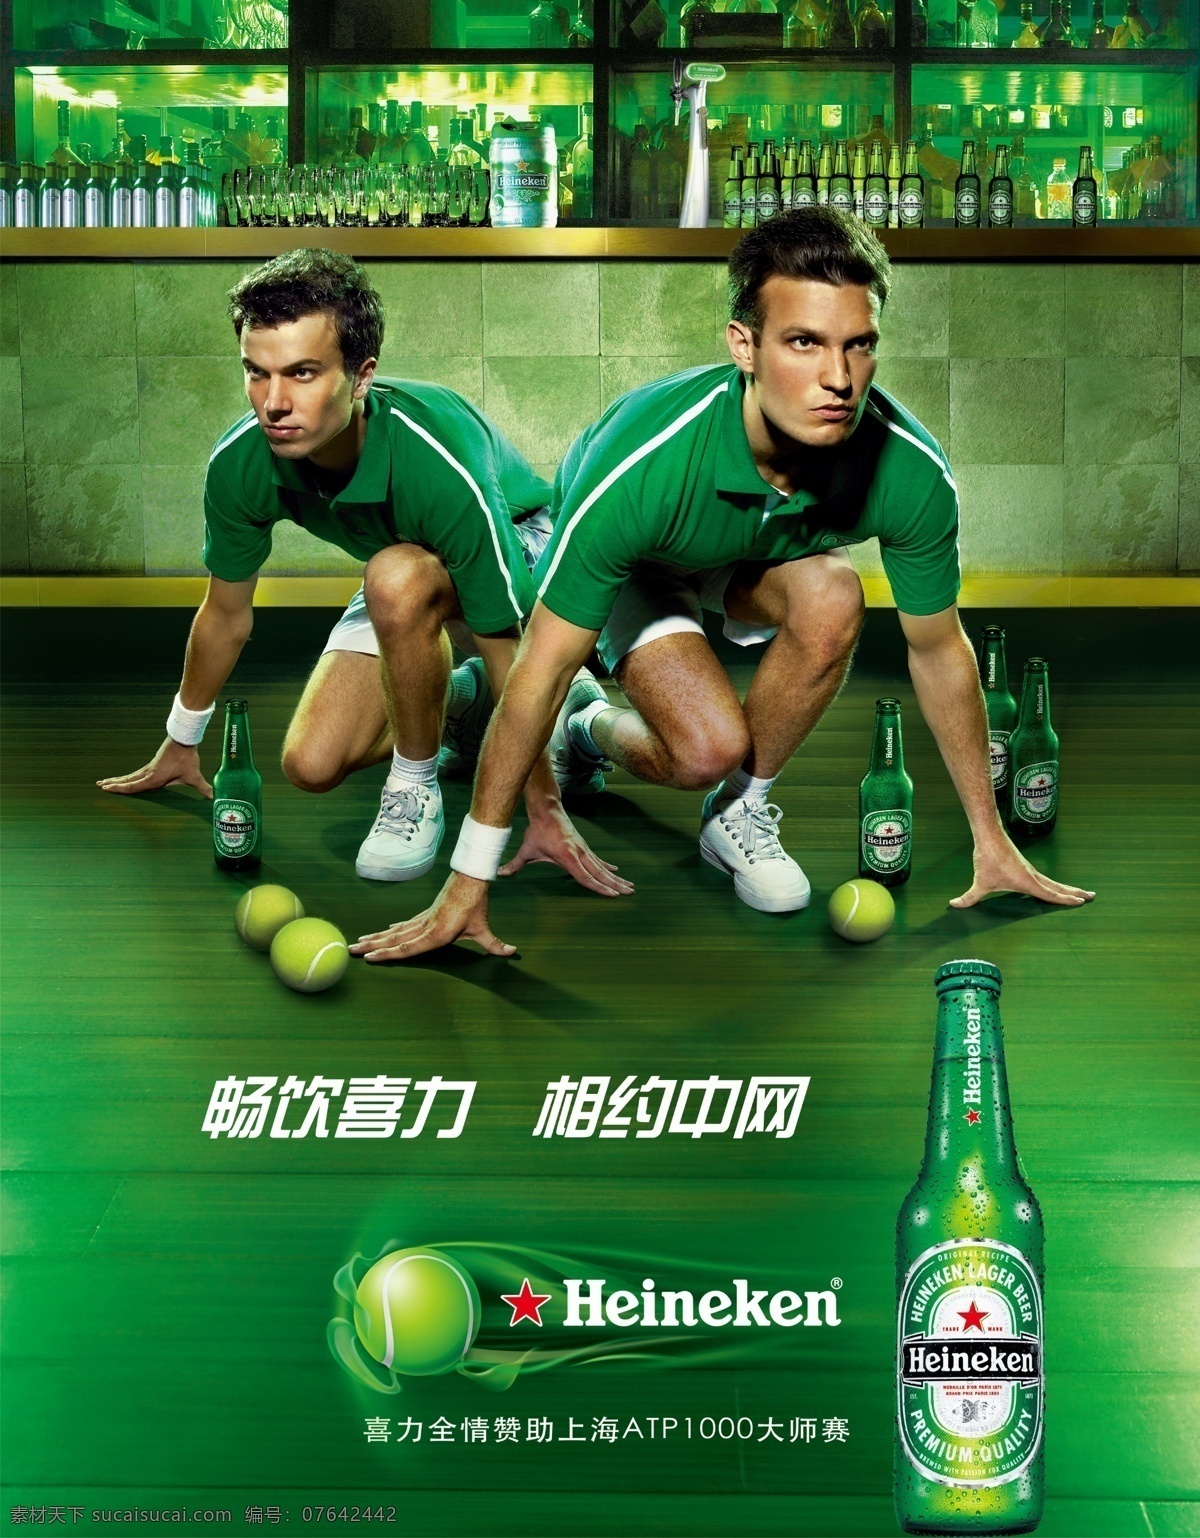 分层 酒吧 绿色背景 啤酒 啤酒瓶 网球 源文件 喜力啤酒 相约 中 网 不 精细 模板下载 喜力 中网 喜力logo 网球运动员